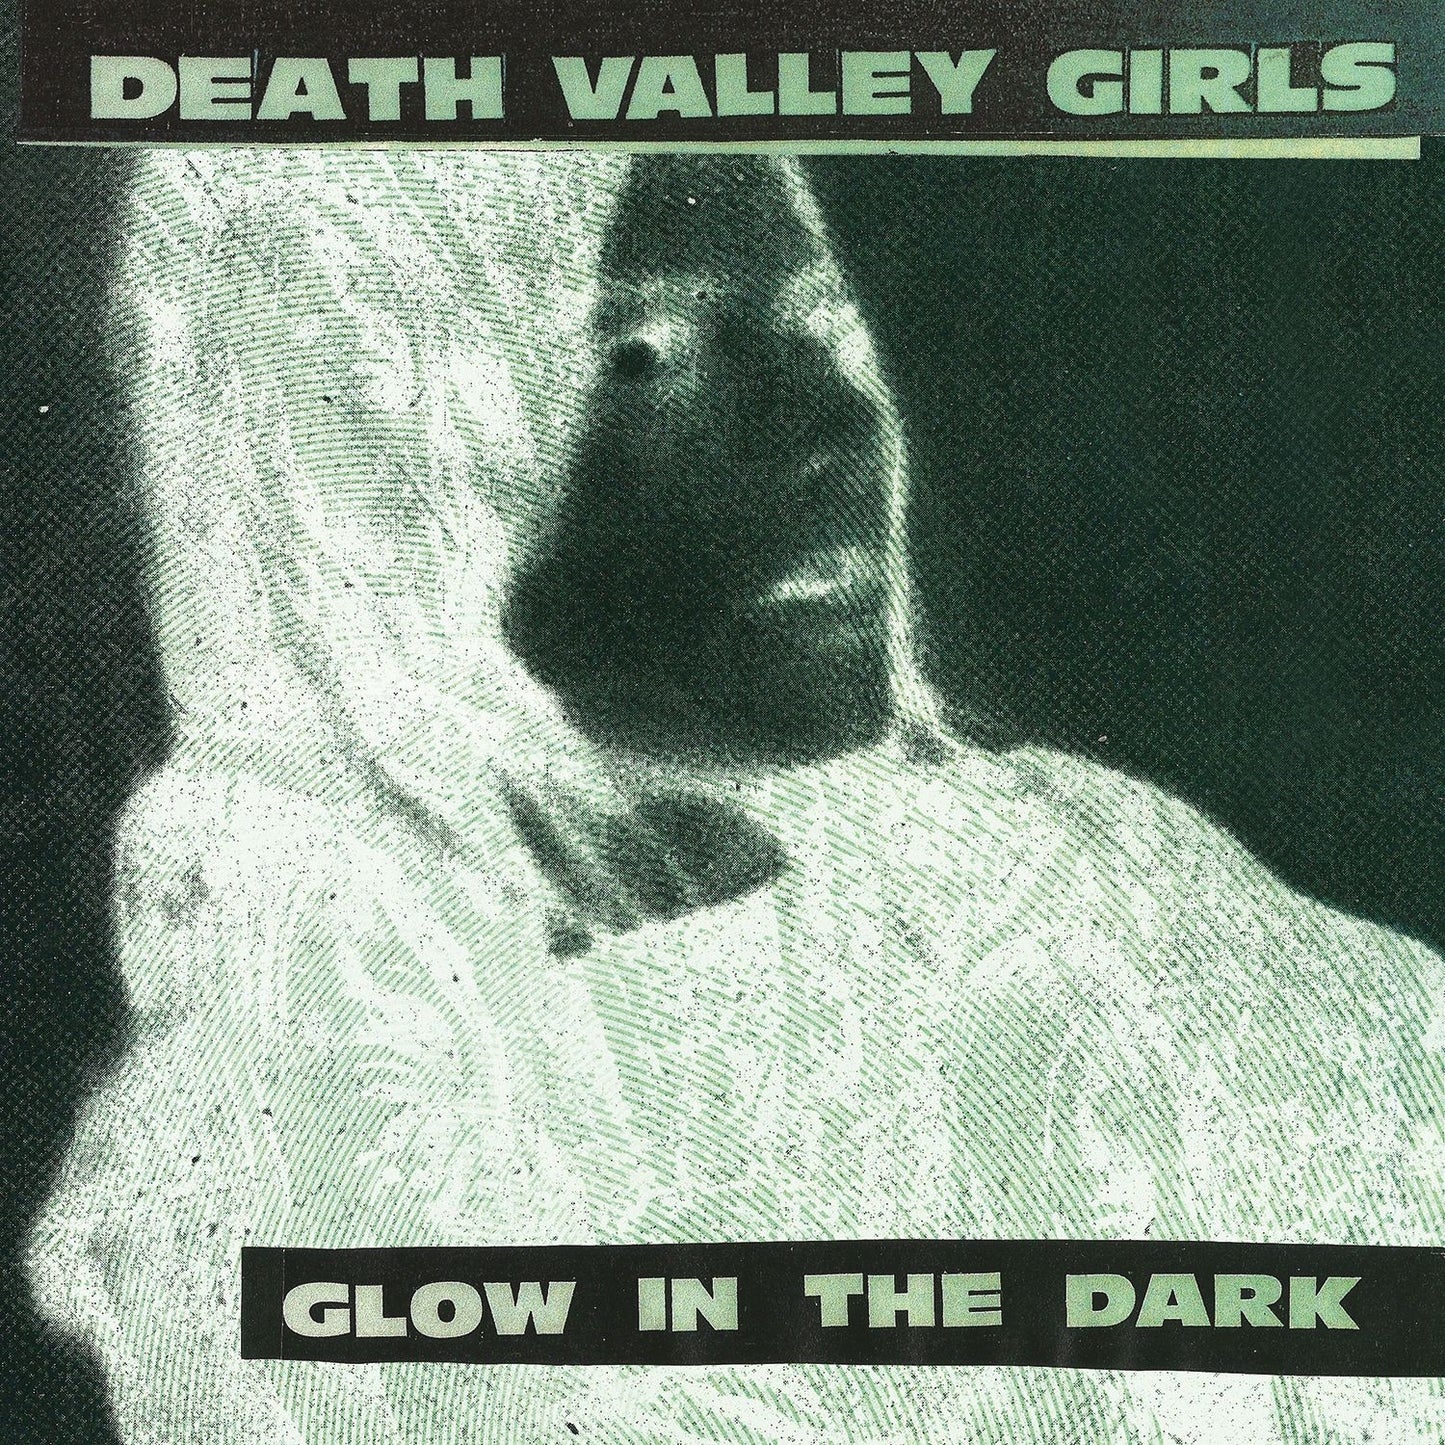 Death Valley Girls - Glow in the Dark - Neon Green & Red w/ Black Splatter